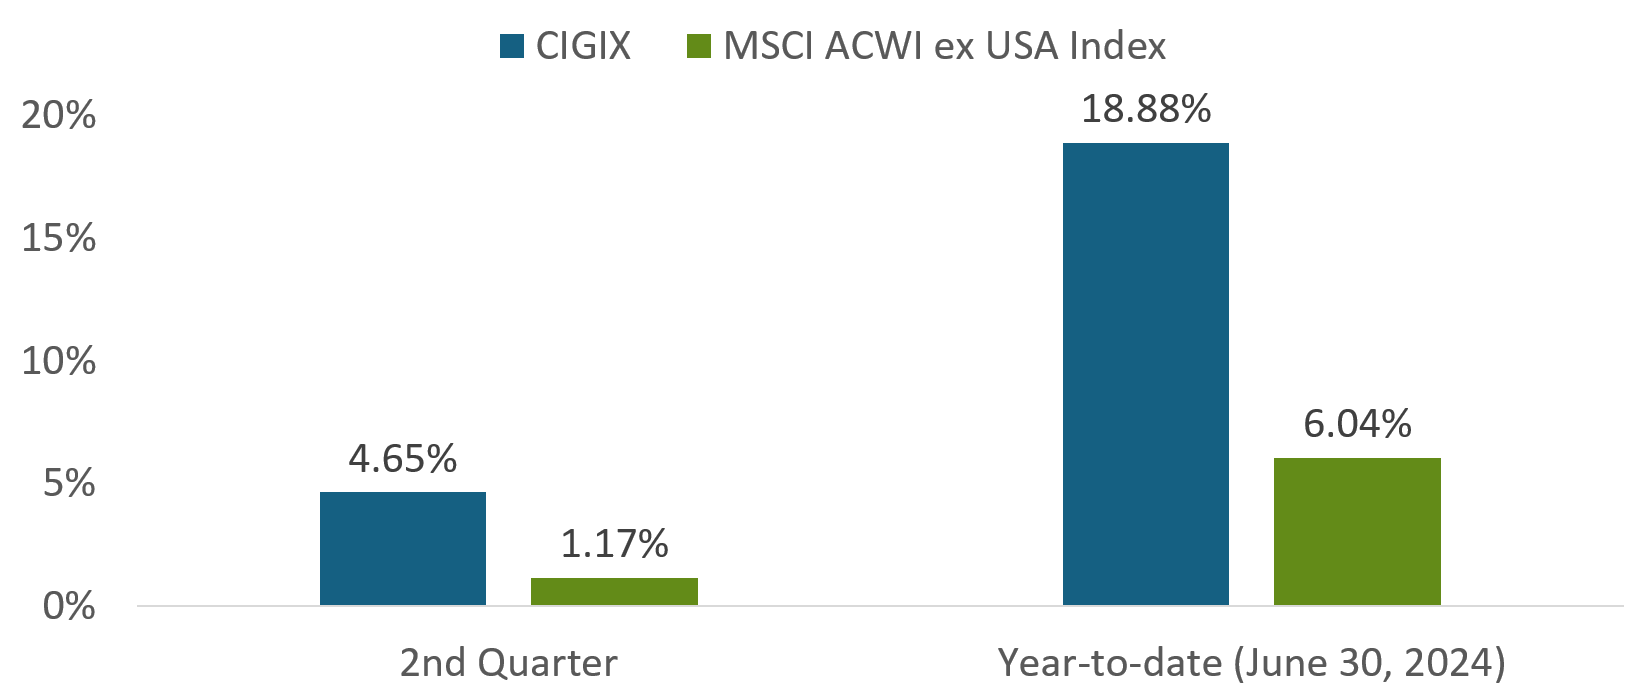 CIGIX vs MSCI ACWI ex USA Index